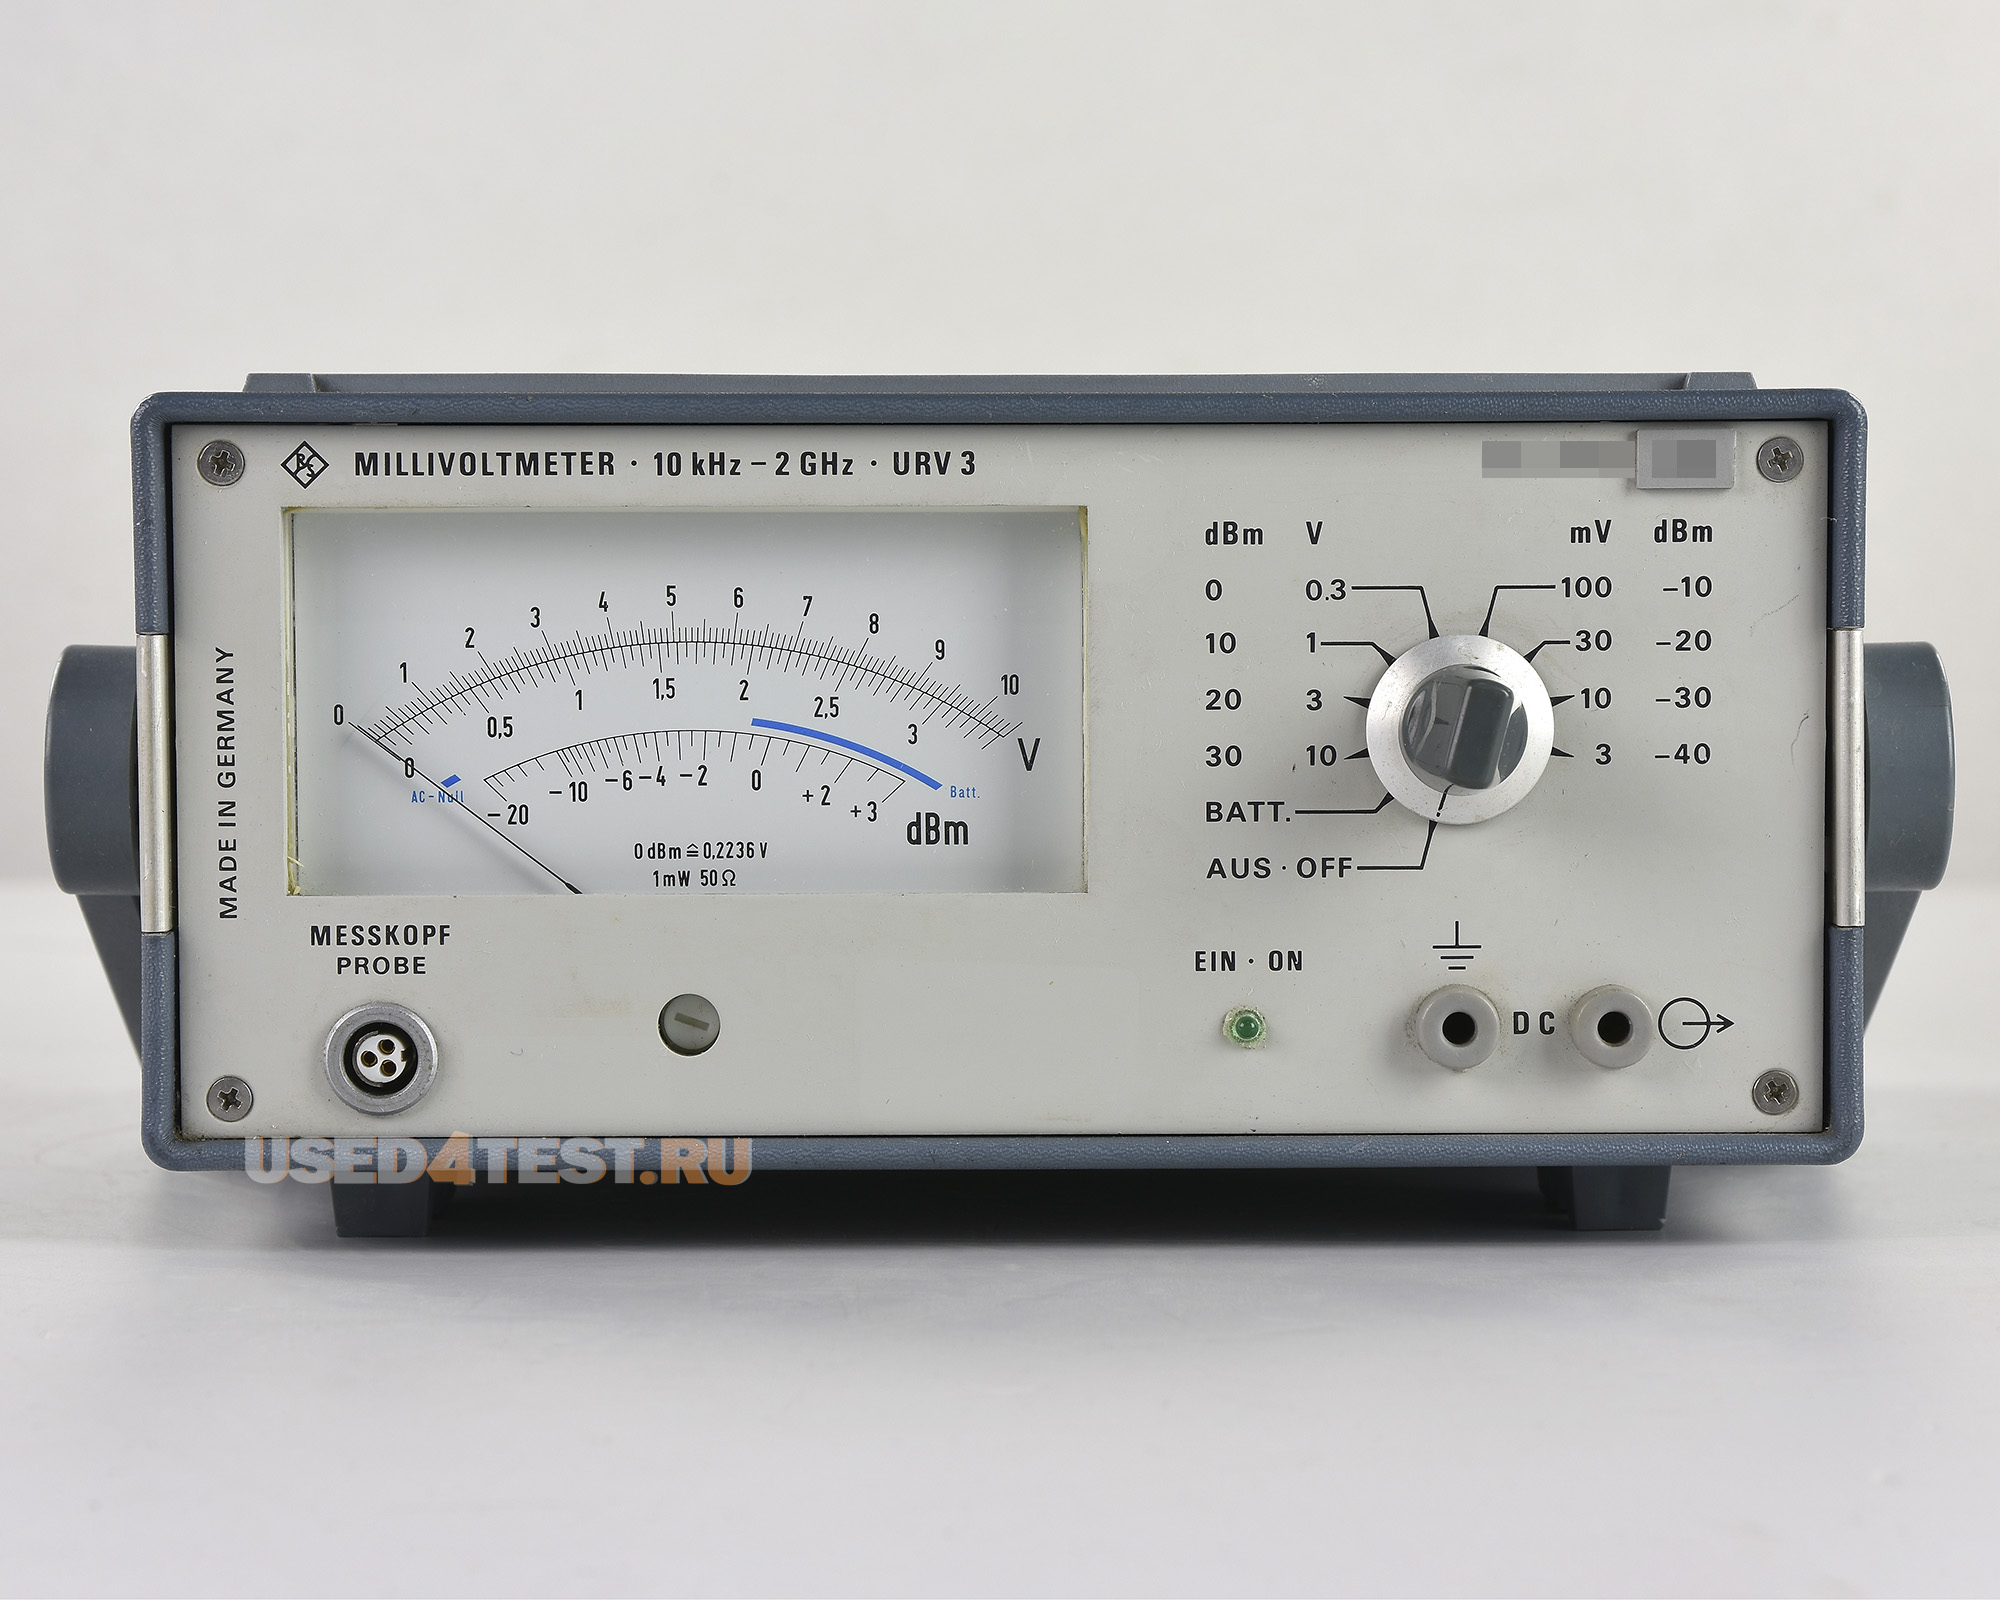 Аналоговый мультиметр Rohde & Schwarz URV3
с диапазоном от 10 кГц до 2 ГГц